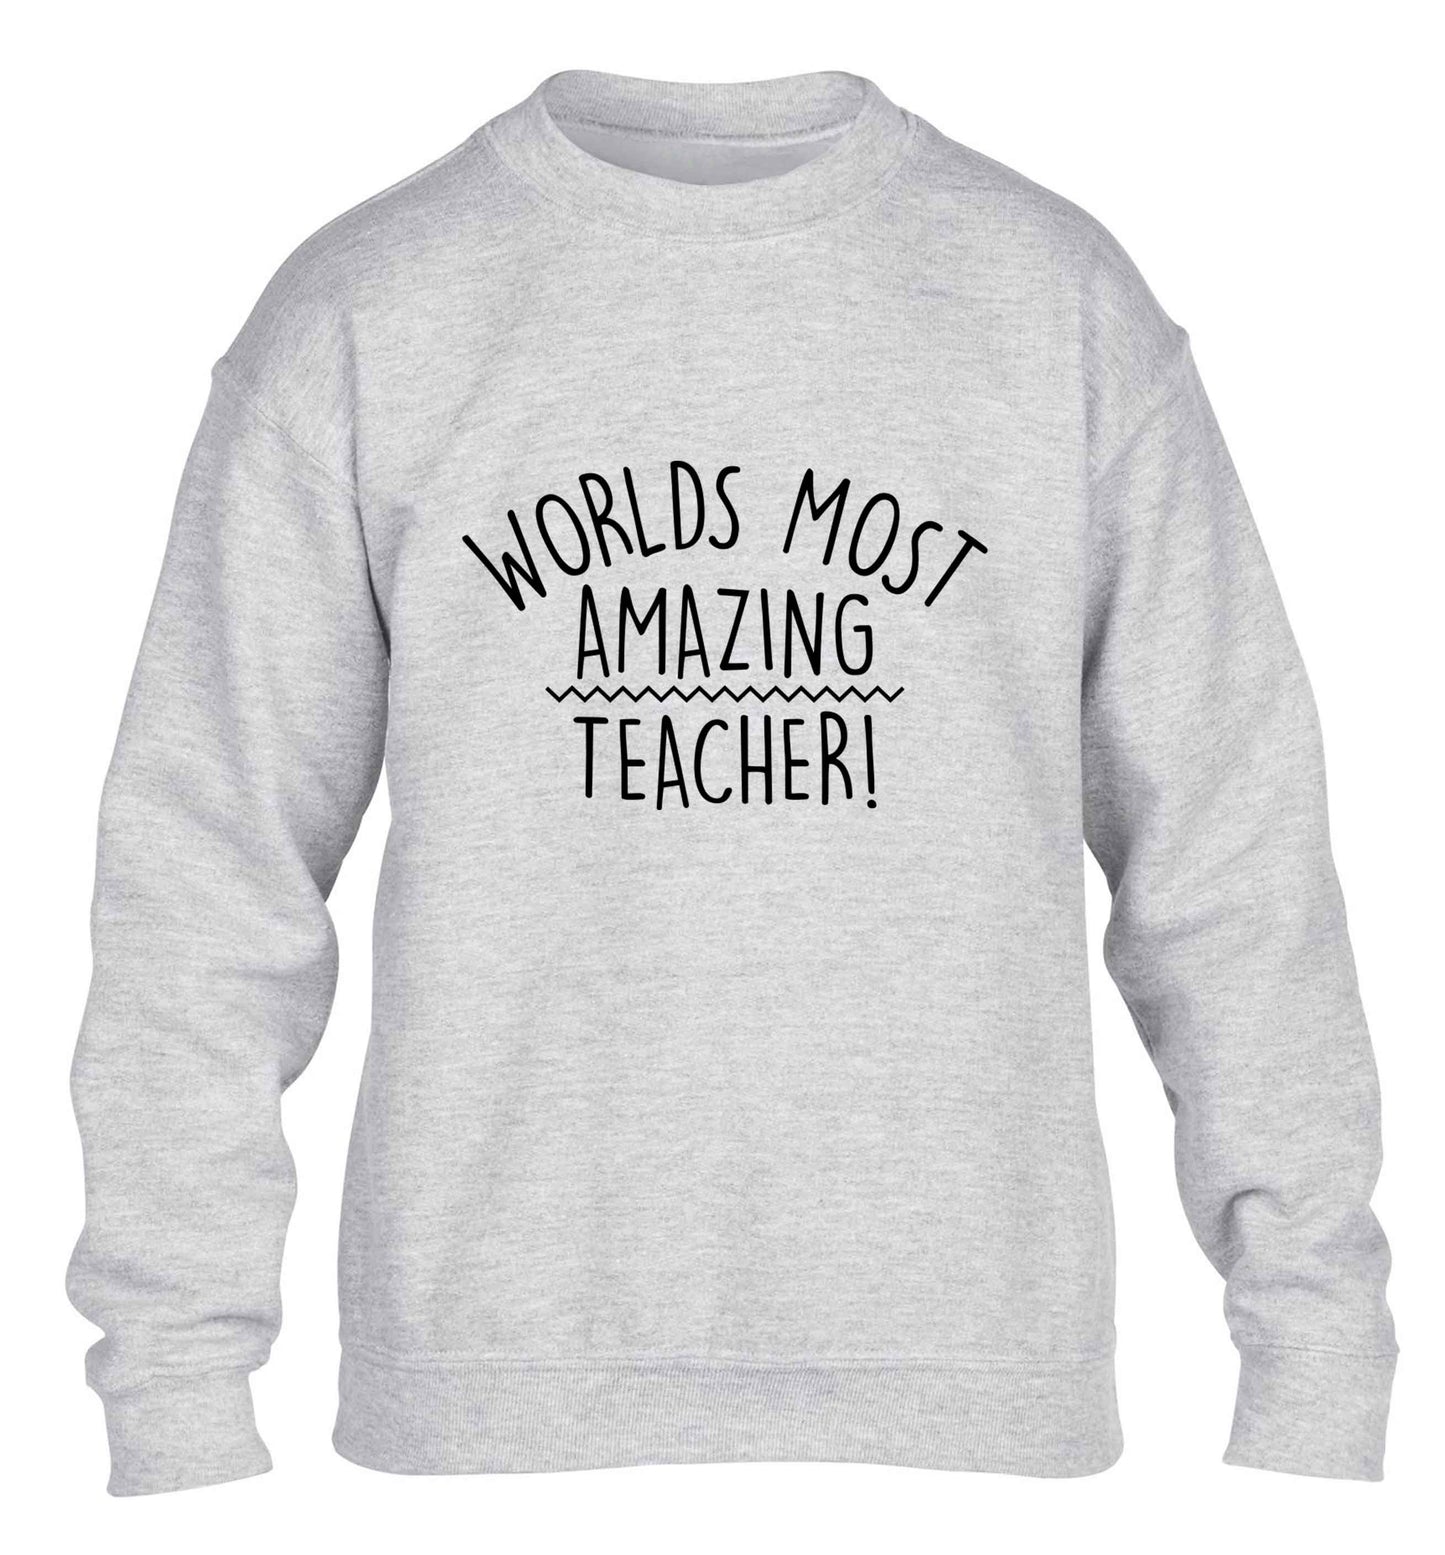 Worlds most amazing teacher children's grey sweater 12-13 Years